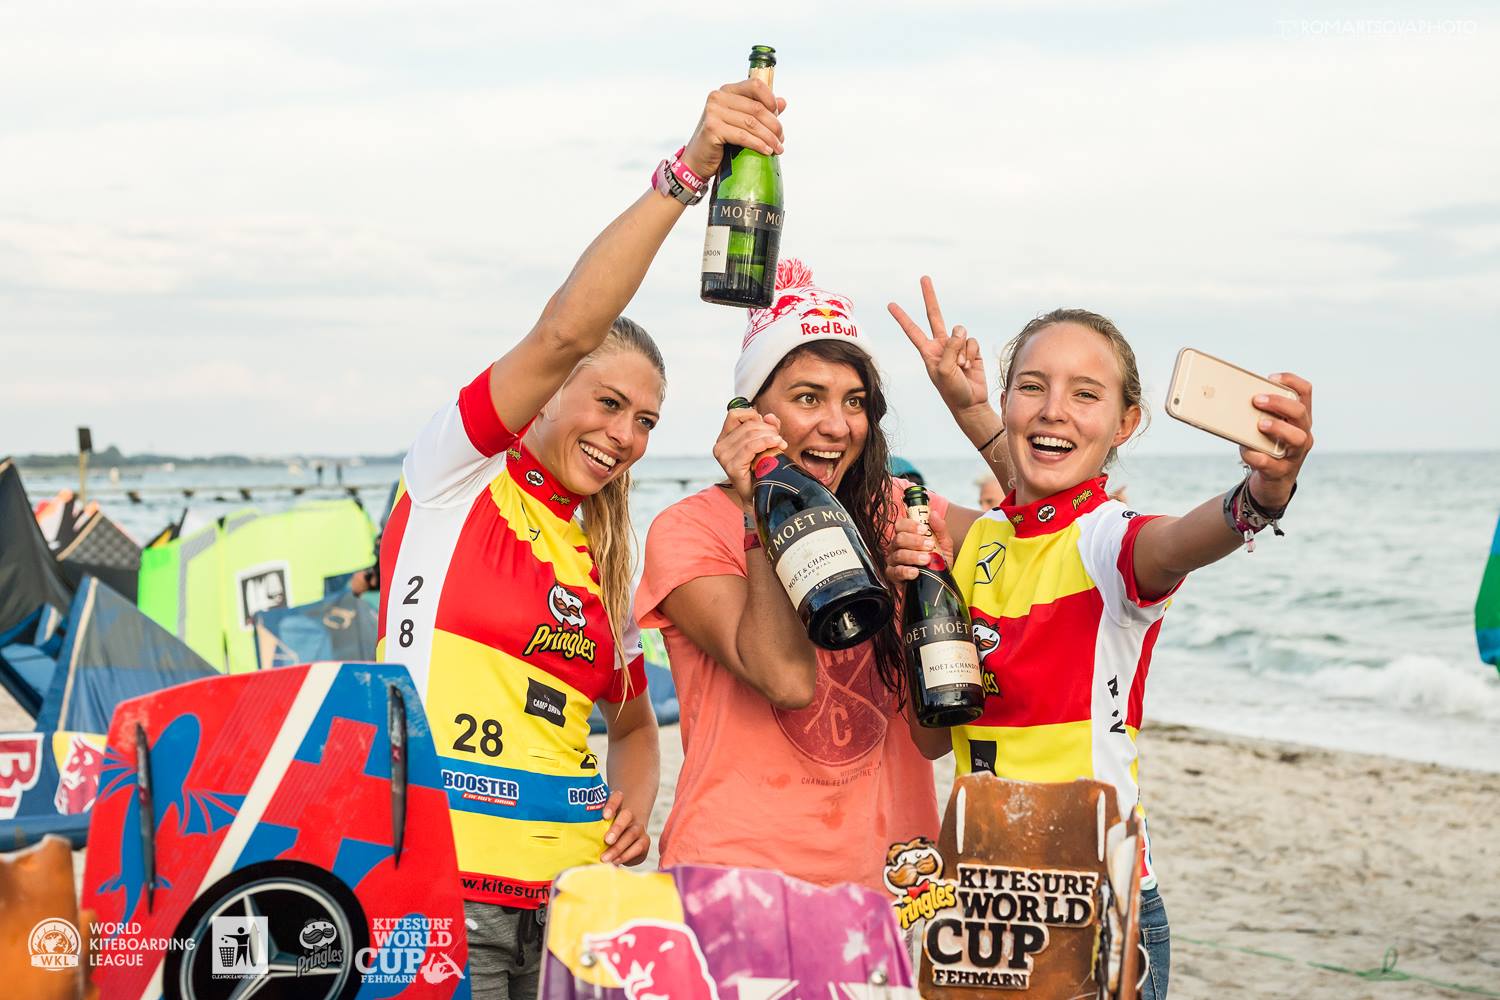 Kiteboarding World Cup Germany – Women’s Final